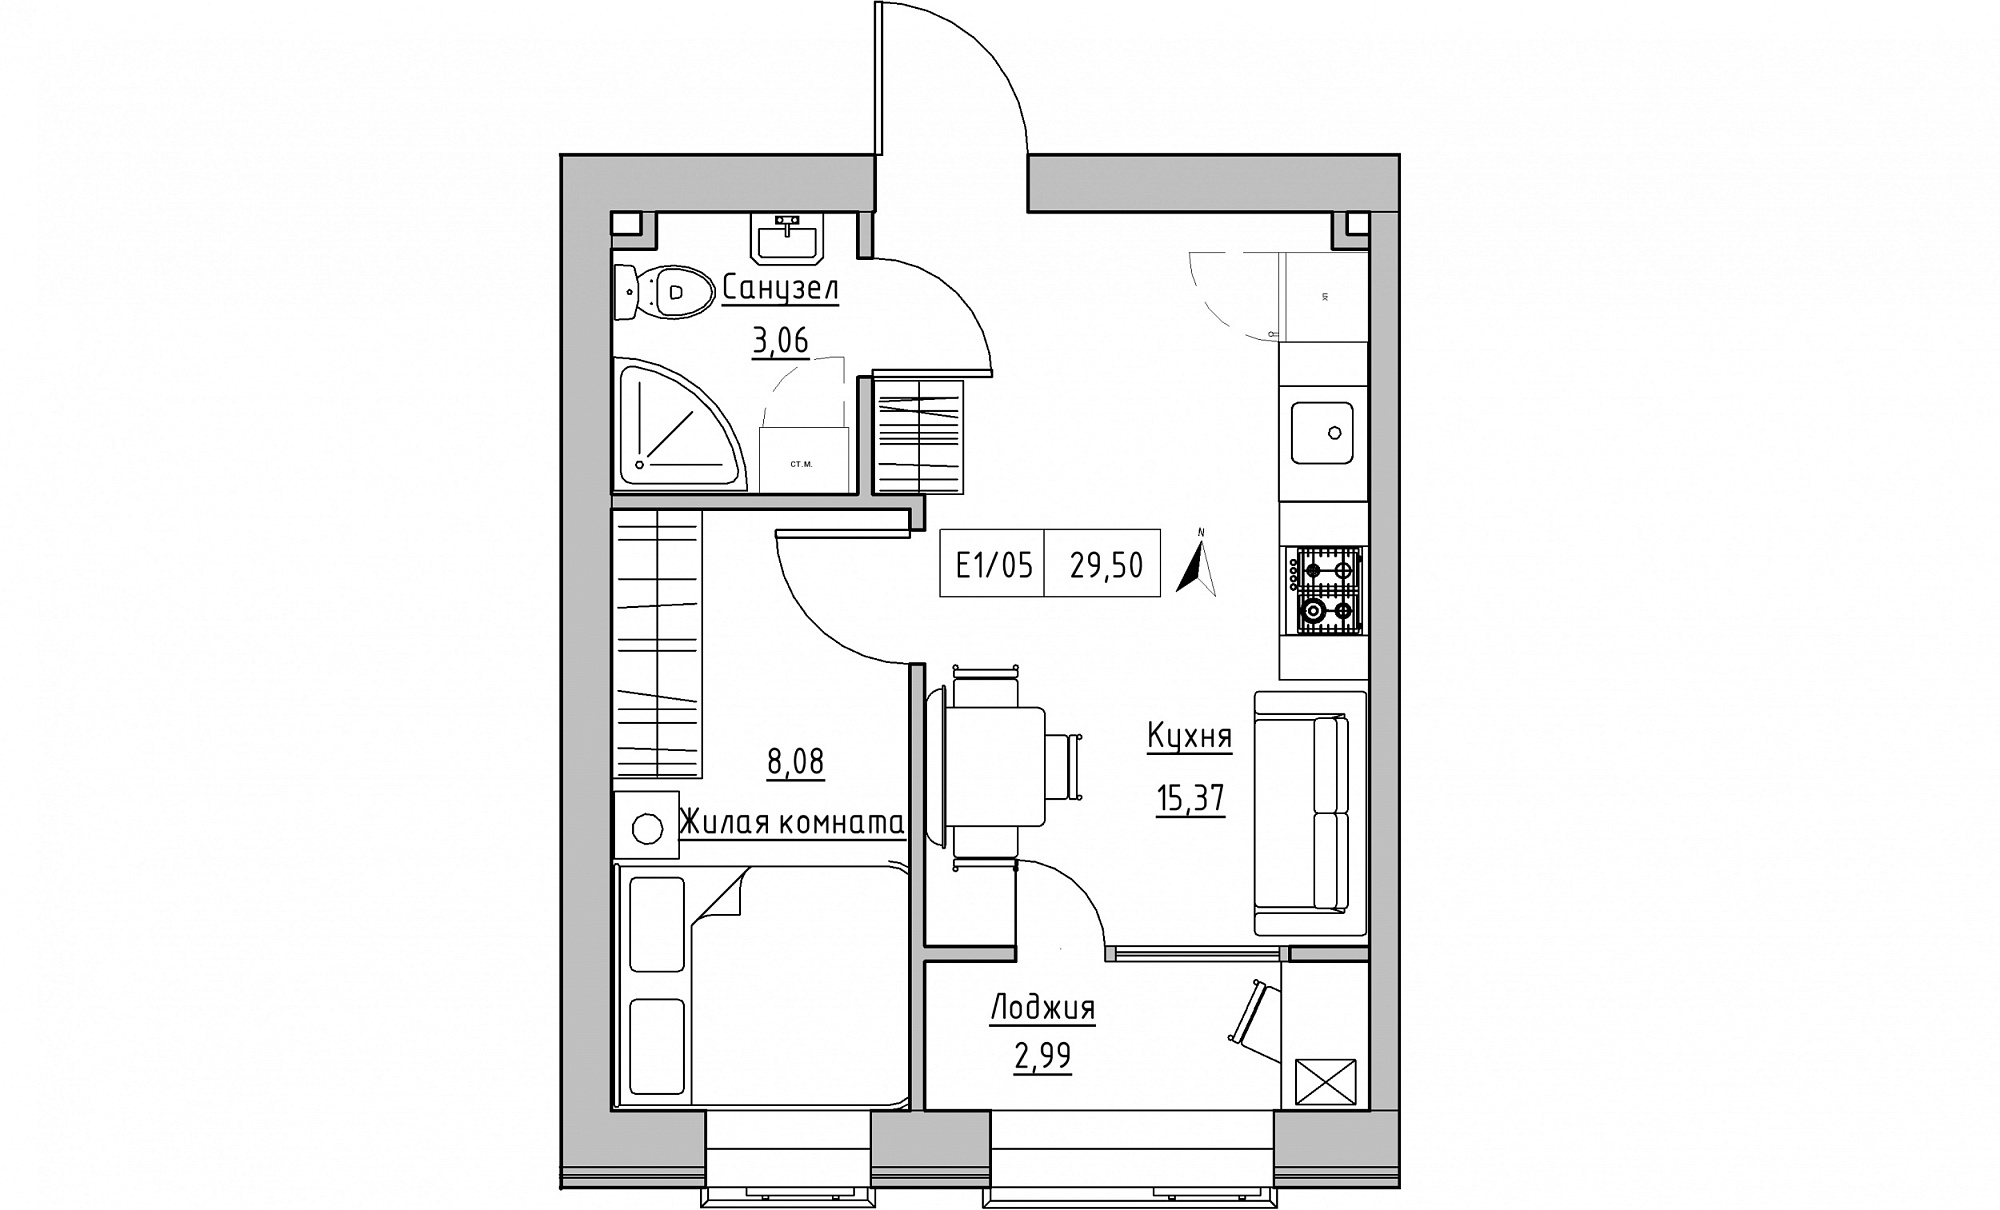 Планування 1-к квартира площею 29.5м2, KS-015-02/0010.